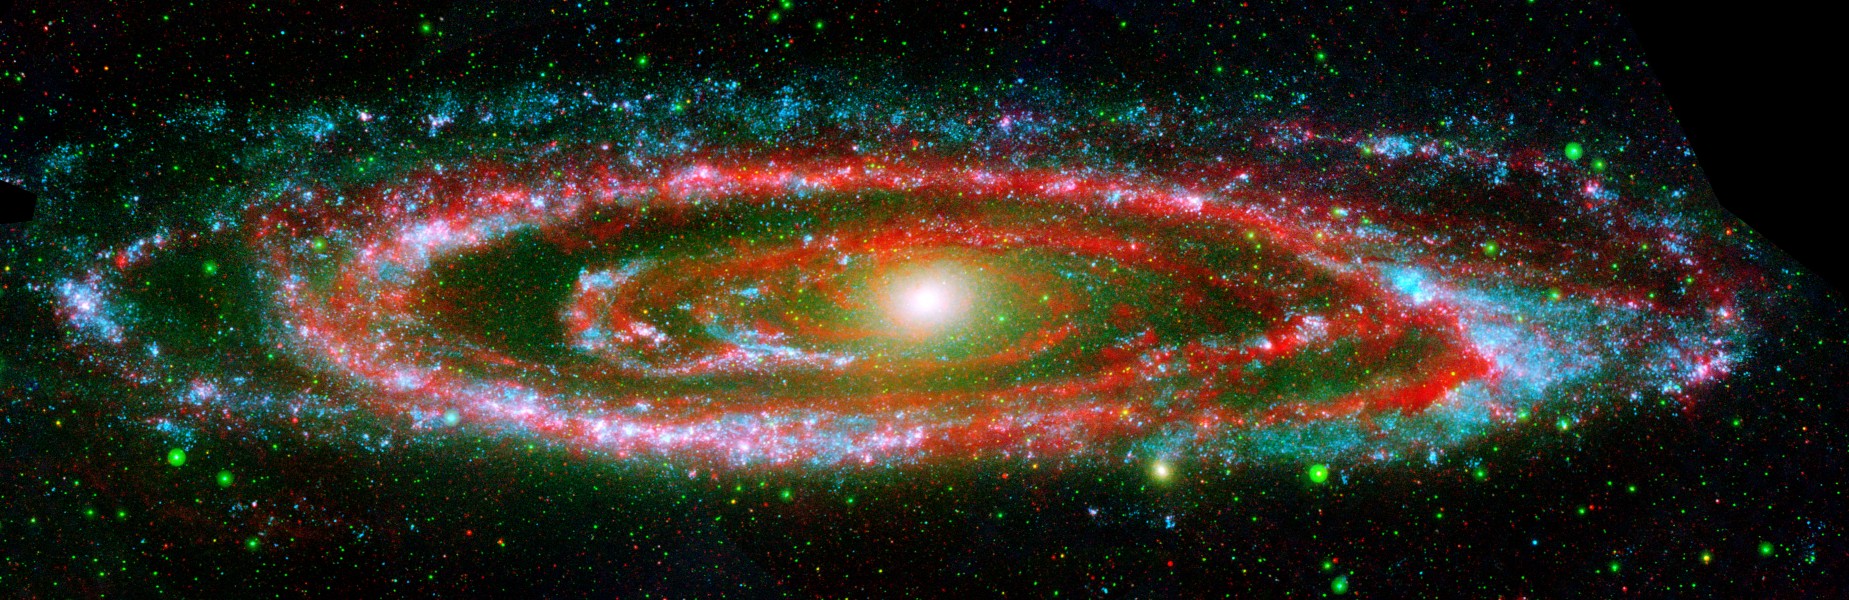 Andromeda Galaxy Composite